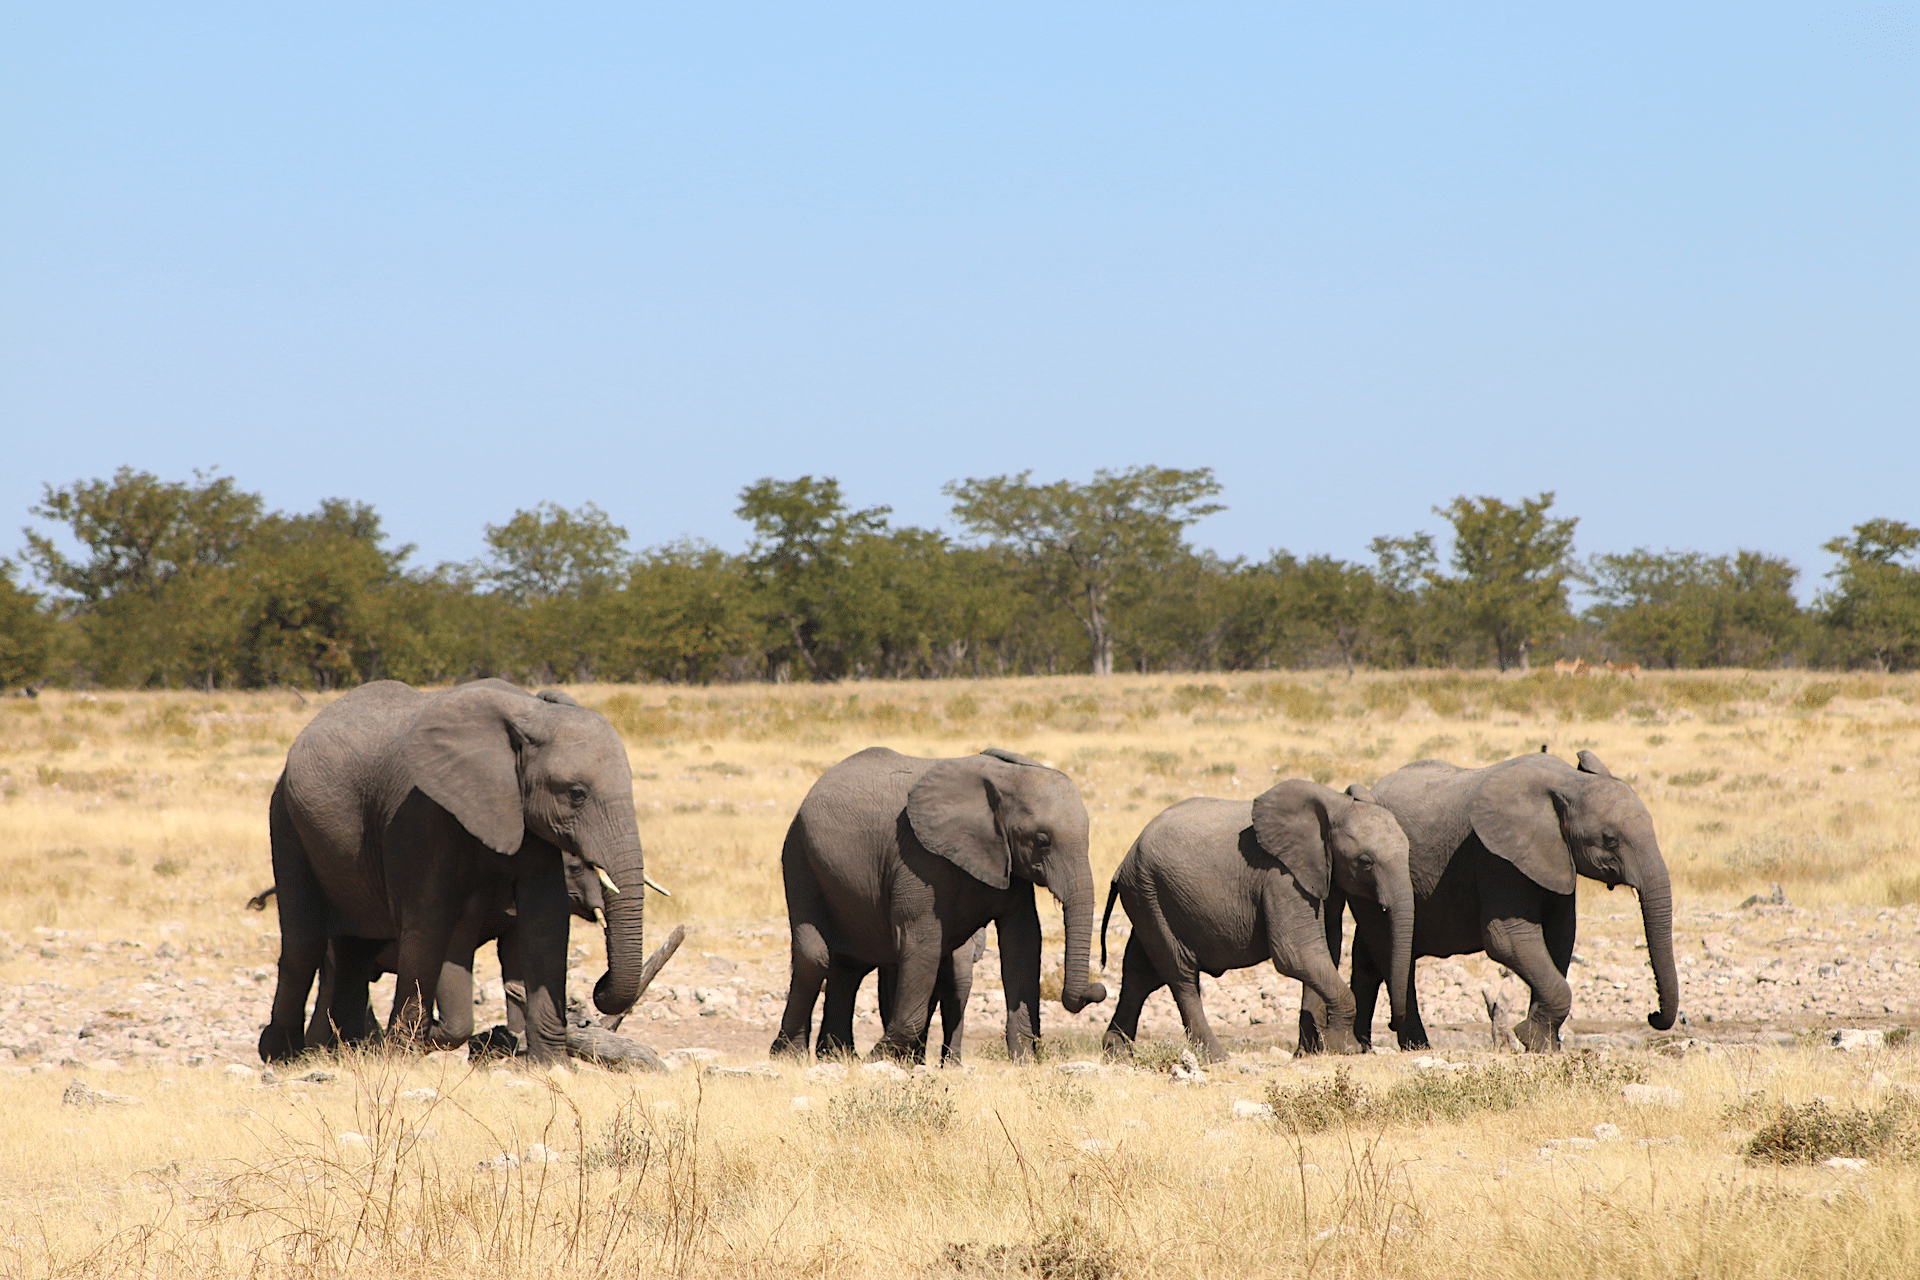 elephants in Etosha National Park, Namibia